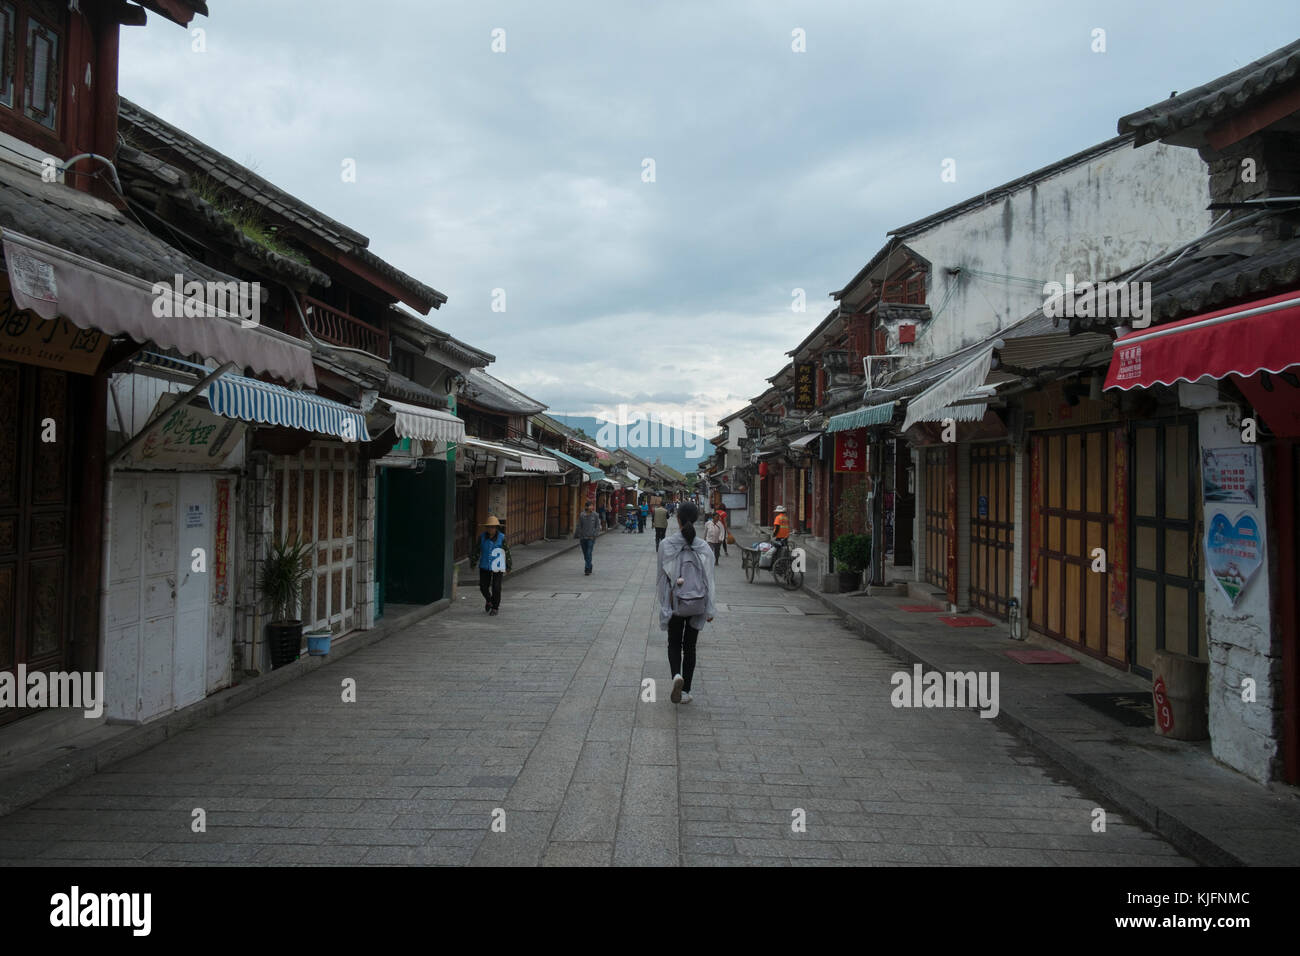 La gente camminare lungo zhe street all'interno della vecchia citta' murata, Dali, nella provincia dello Yunnan in Cina Foto Stock